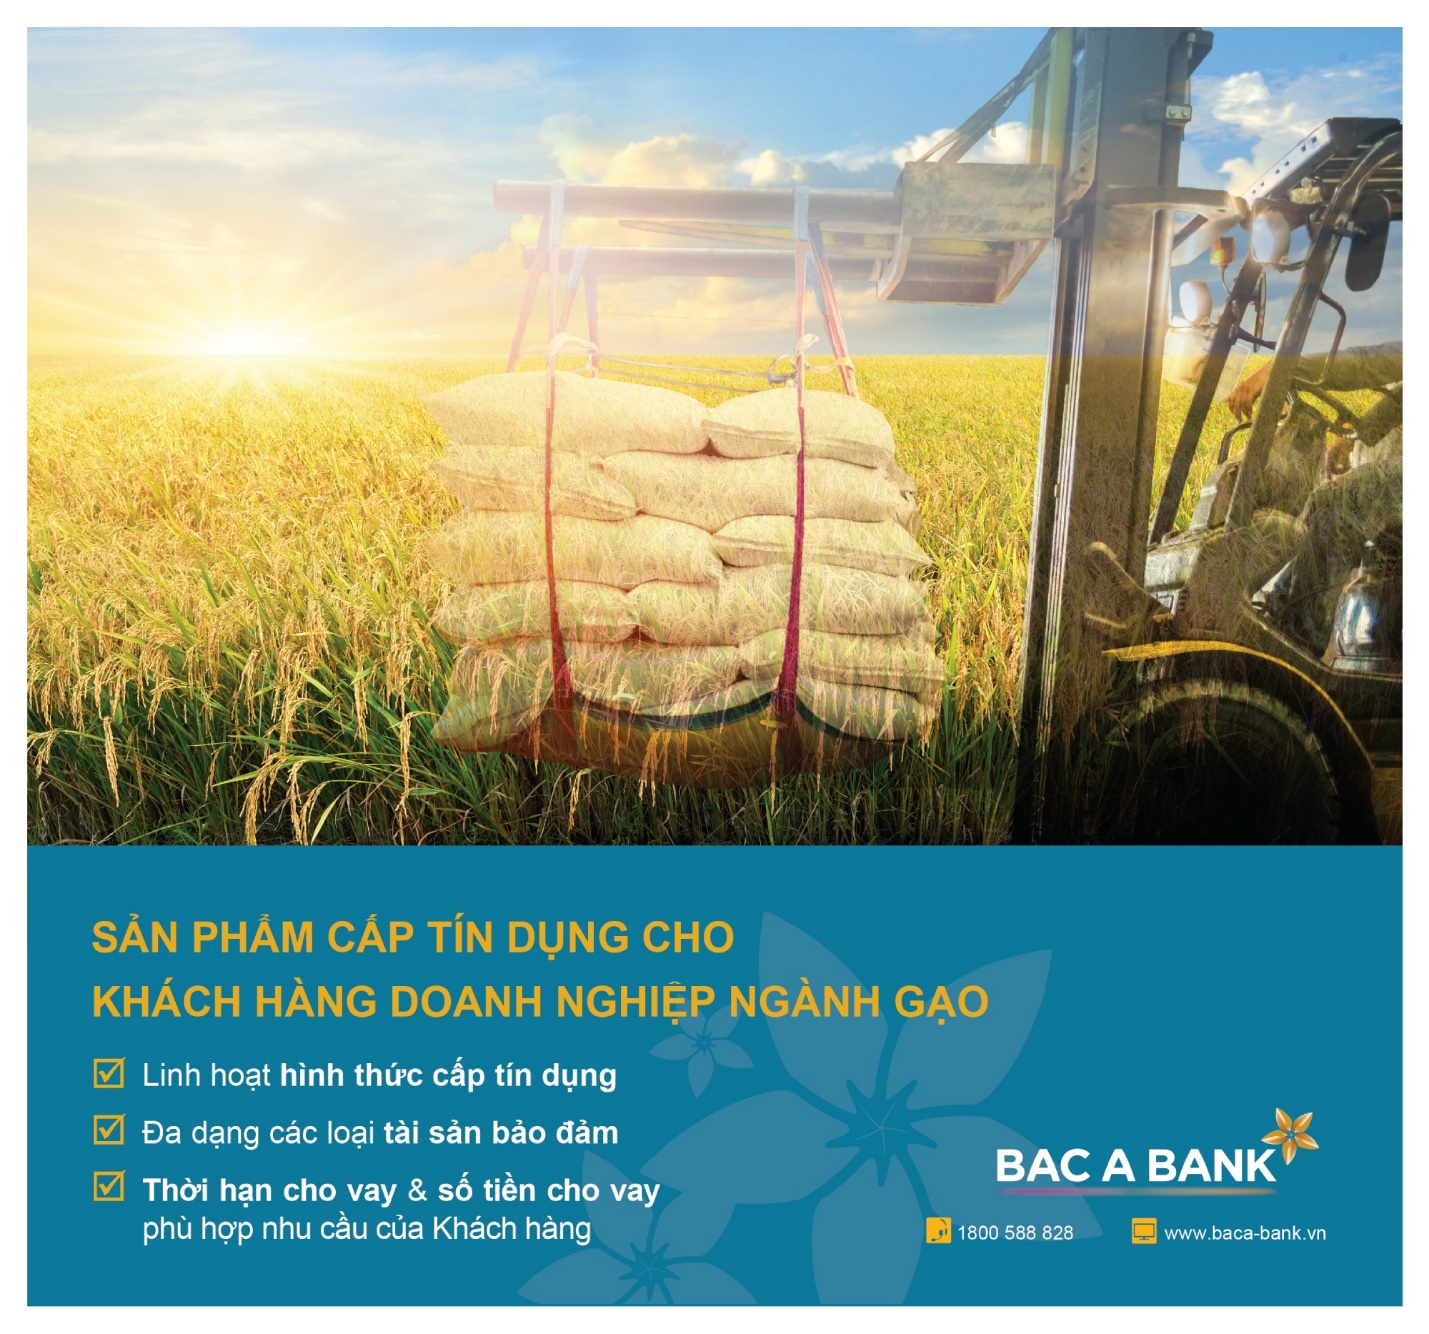 Doanh nghiệp ngành gạo đón ‘trợ lực’ từ Bac A Bank - 2